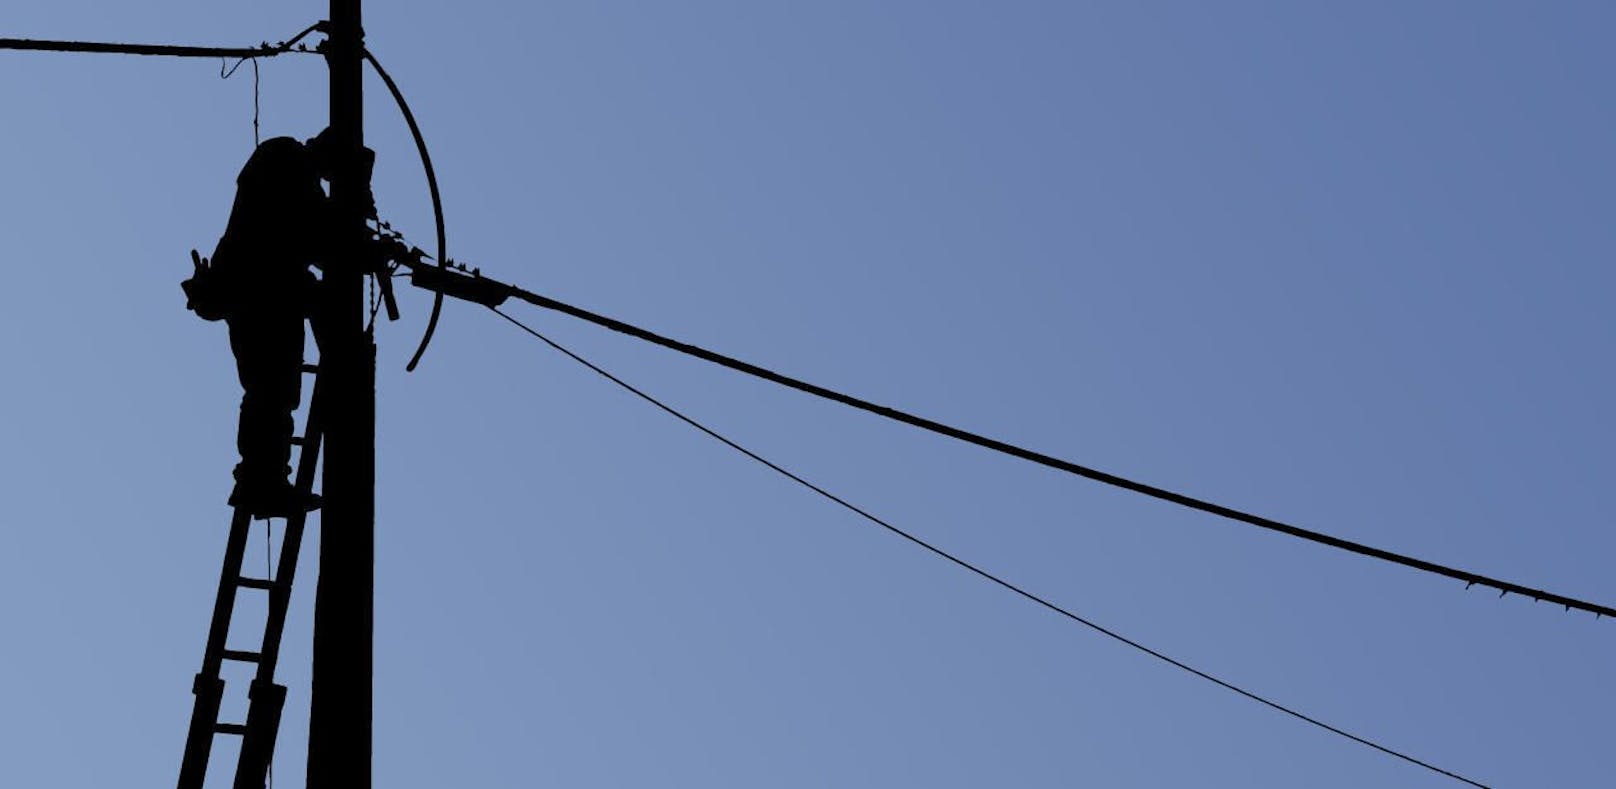 Elektriker kletterte auf Strommast, der brach ab